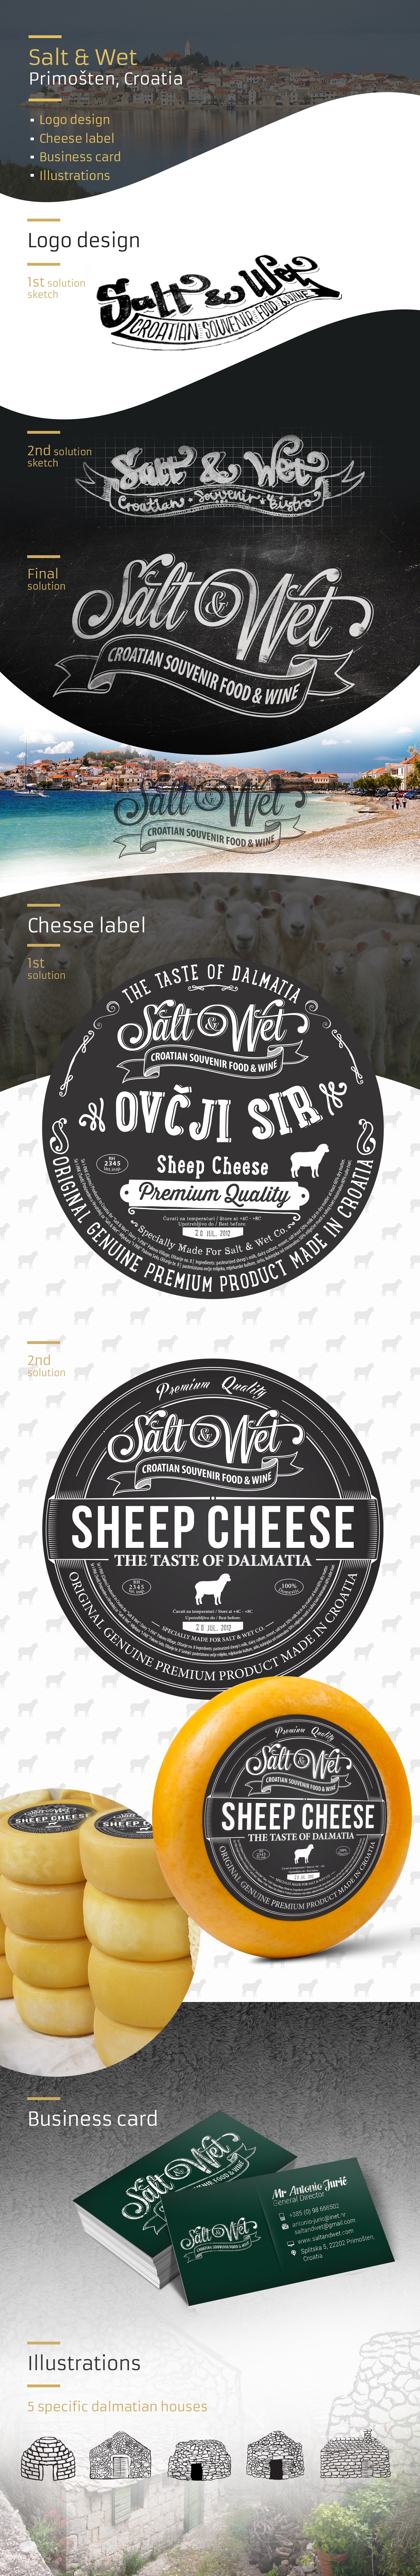 saltandwet etiketa za sir i logo